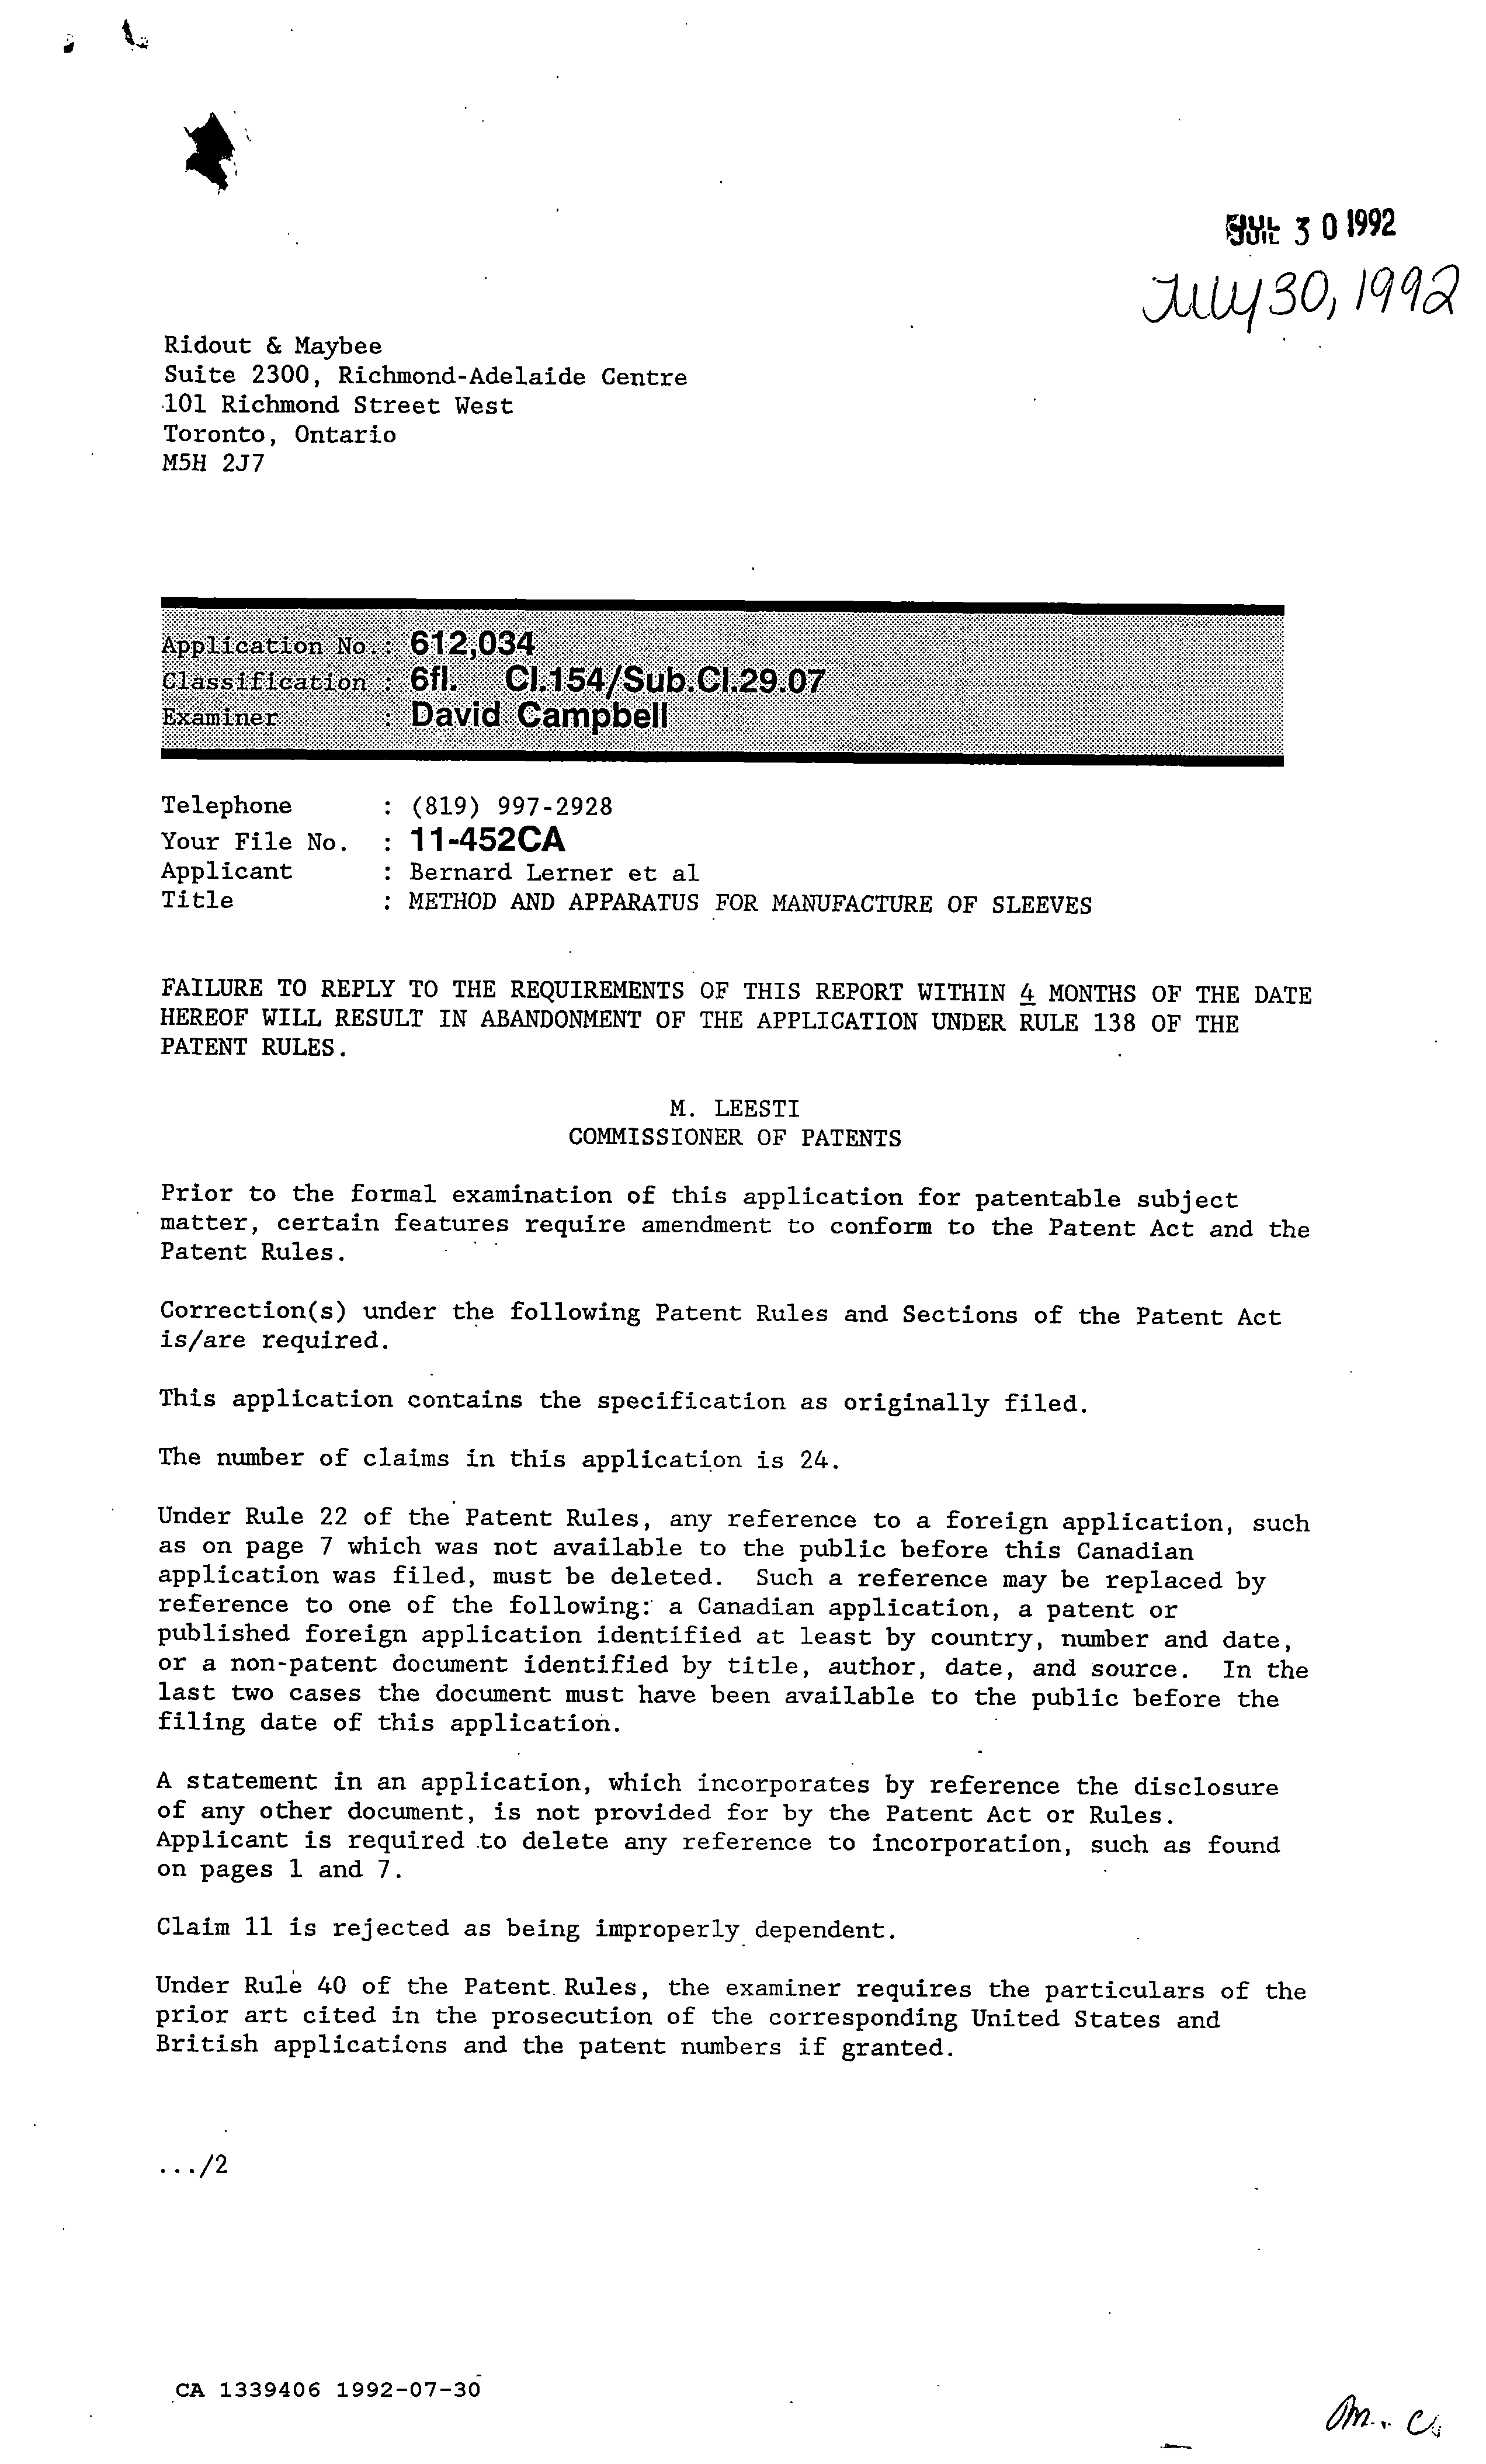 Document de brevet canadien 1339406. Demande d'examen 19920730. Image 1 de 2